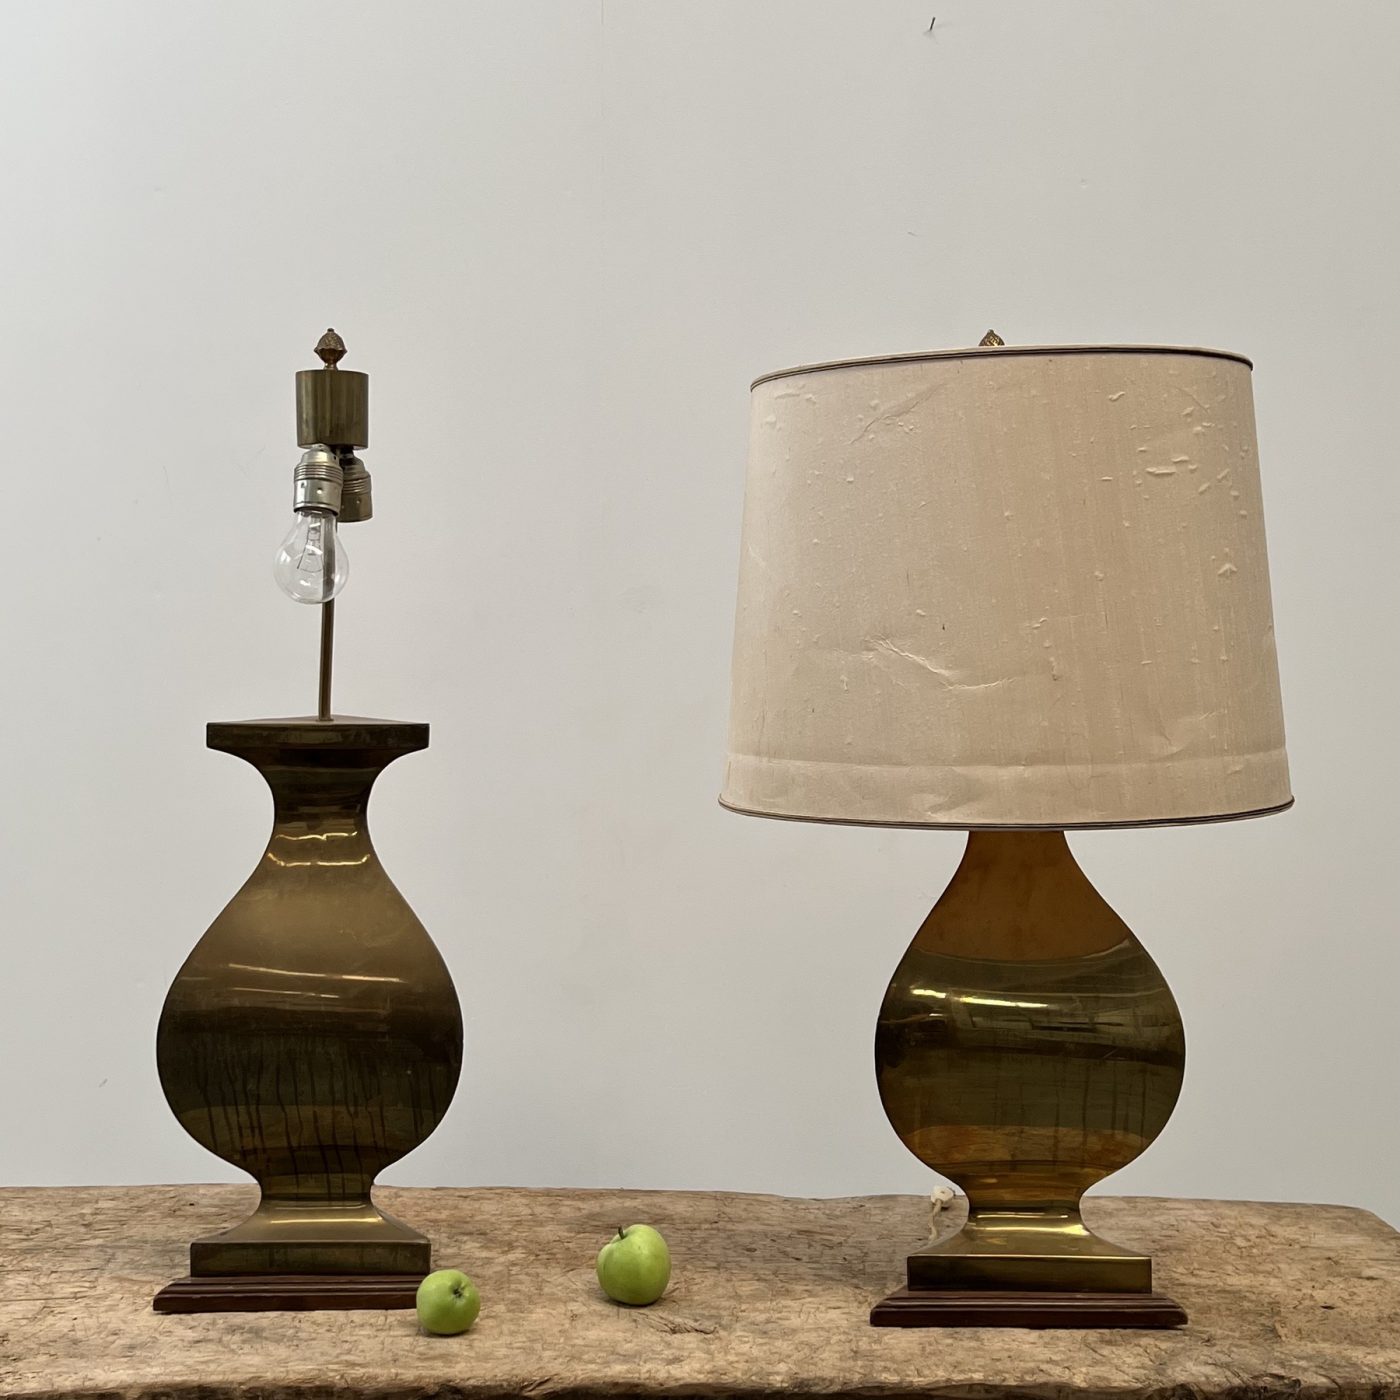 objet-vagabond-copper-lamps0003